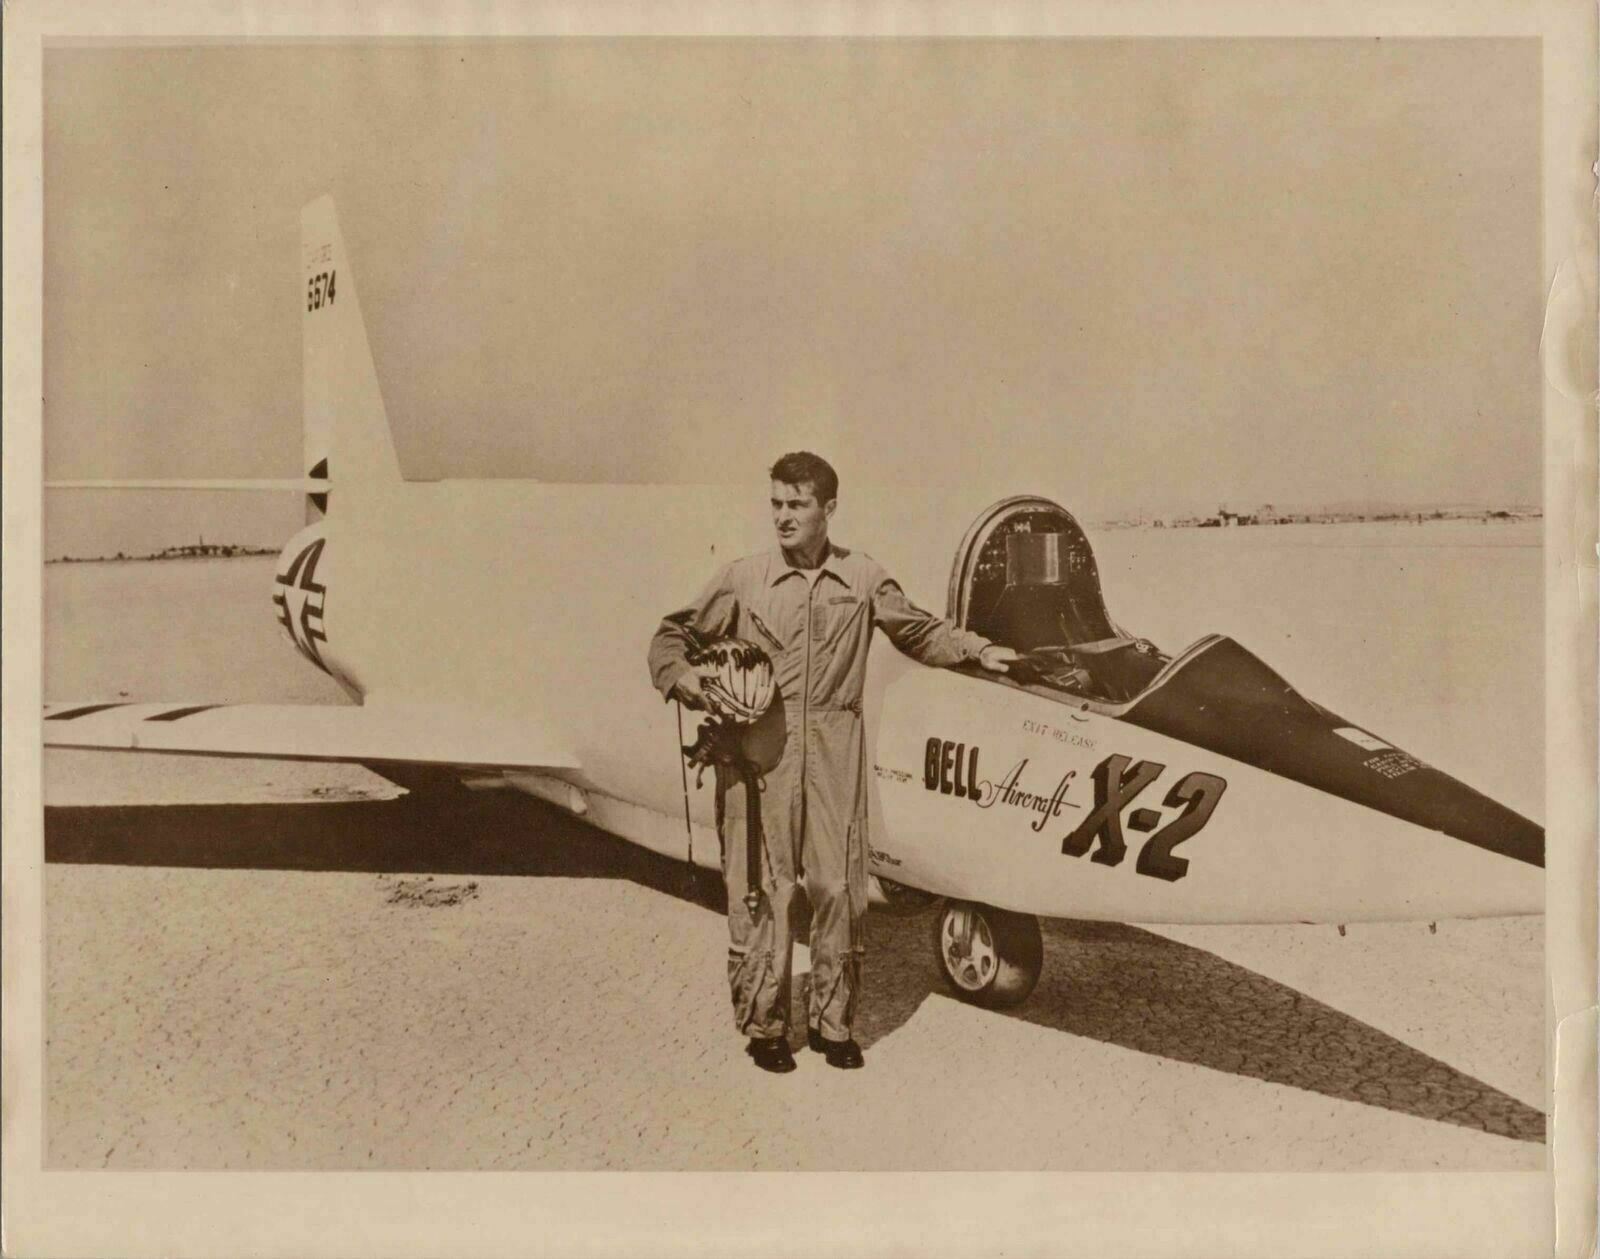 BELL X-2 ROCKET AIRCRAFT FRANK EVEREST TEST PILOT ORIGINAL 1956 PRESS PHOTO